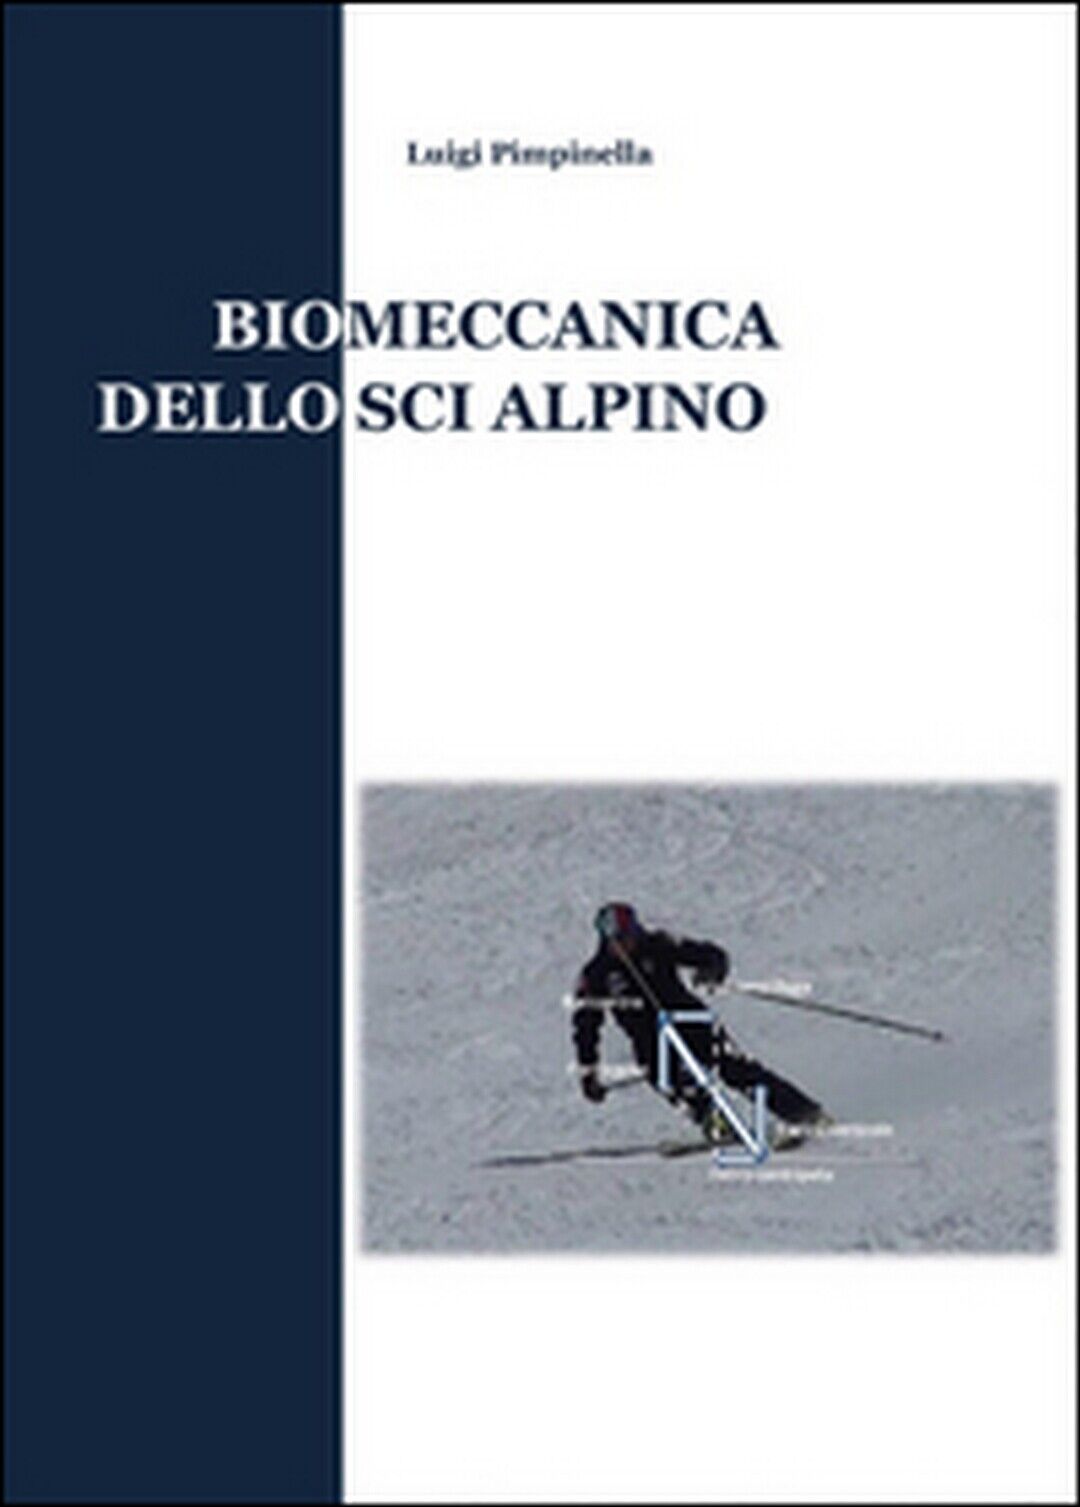 Biomeccanica dello sci alpino  di Luigi Pimpinella,  2015,  Youcanprint libro usato